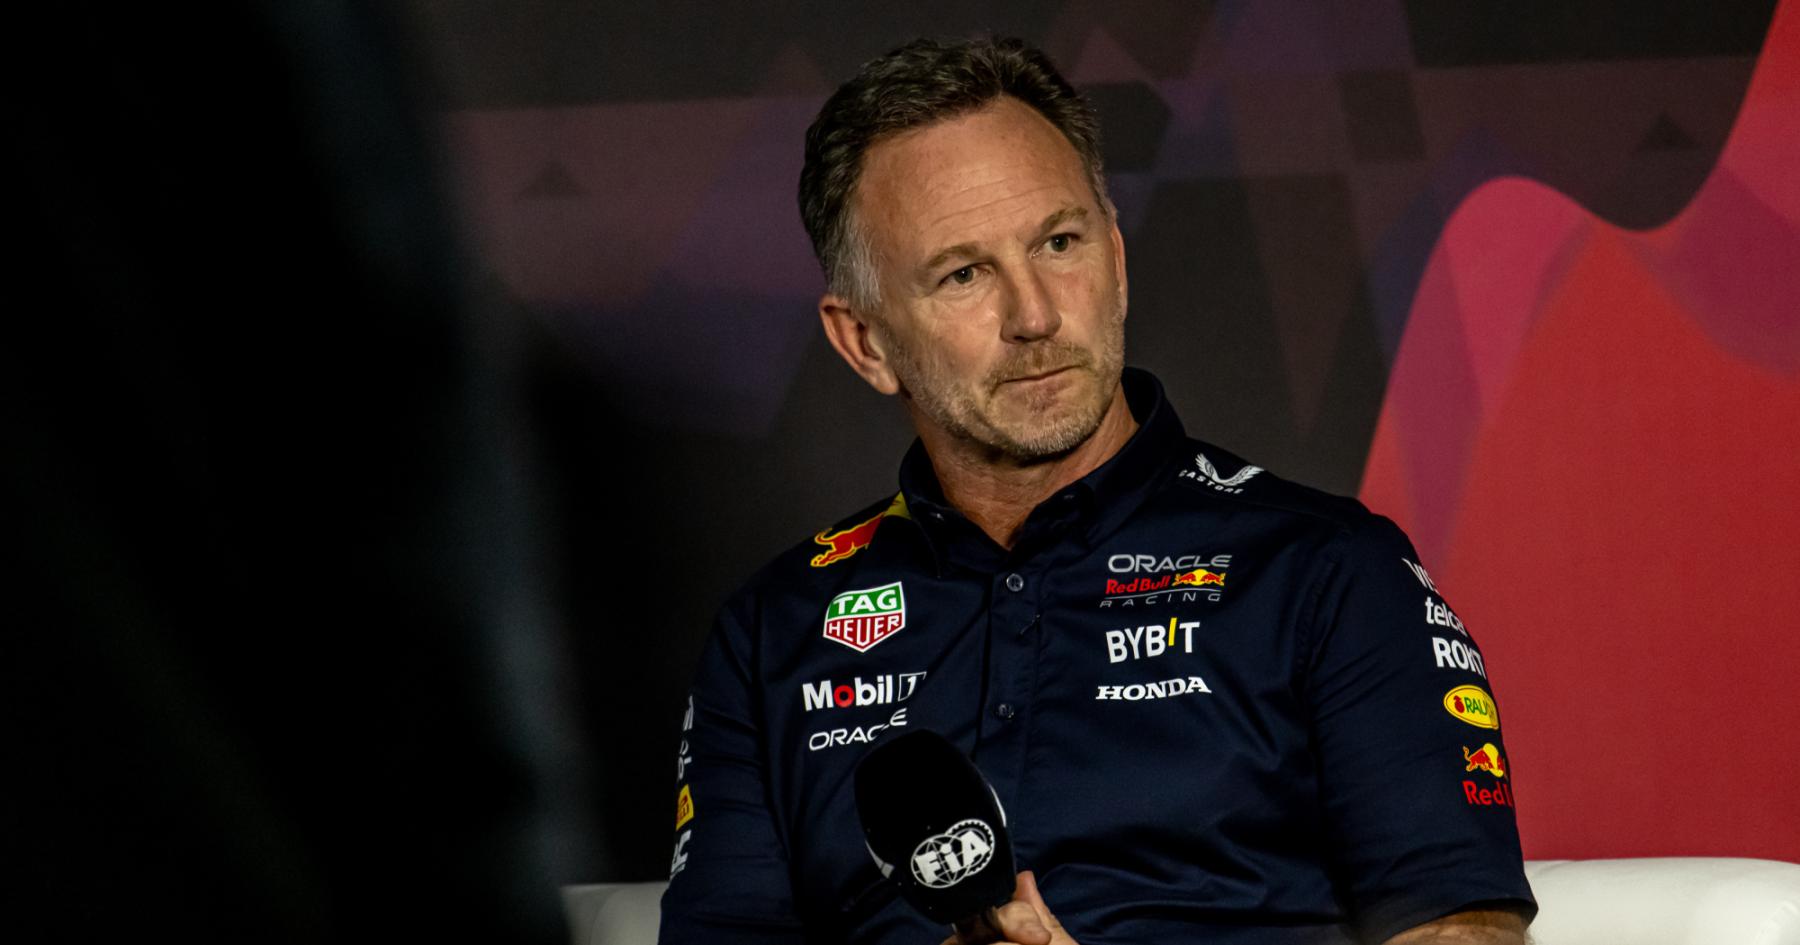 Horner glosses over 'explosive' Verstappen issue inside Red Bull